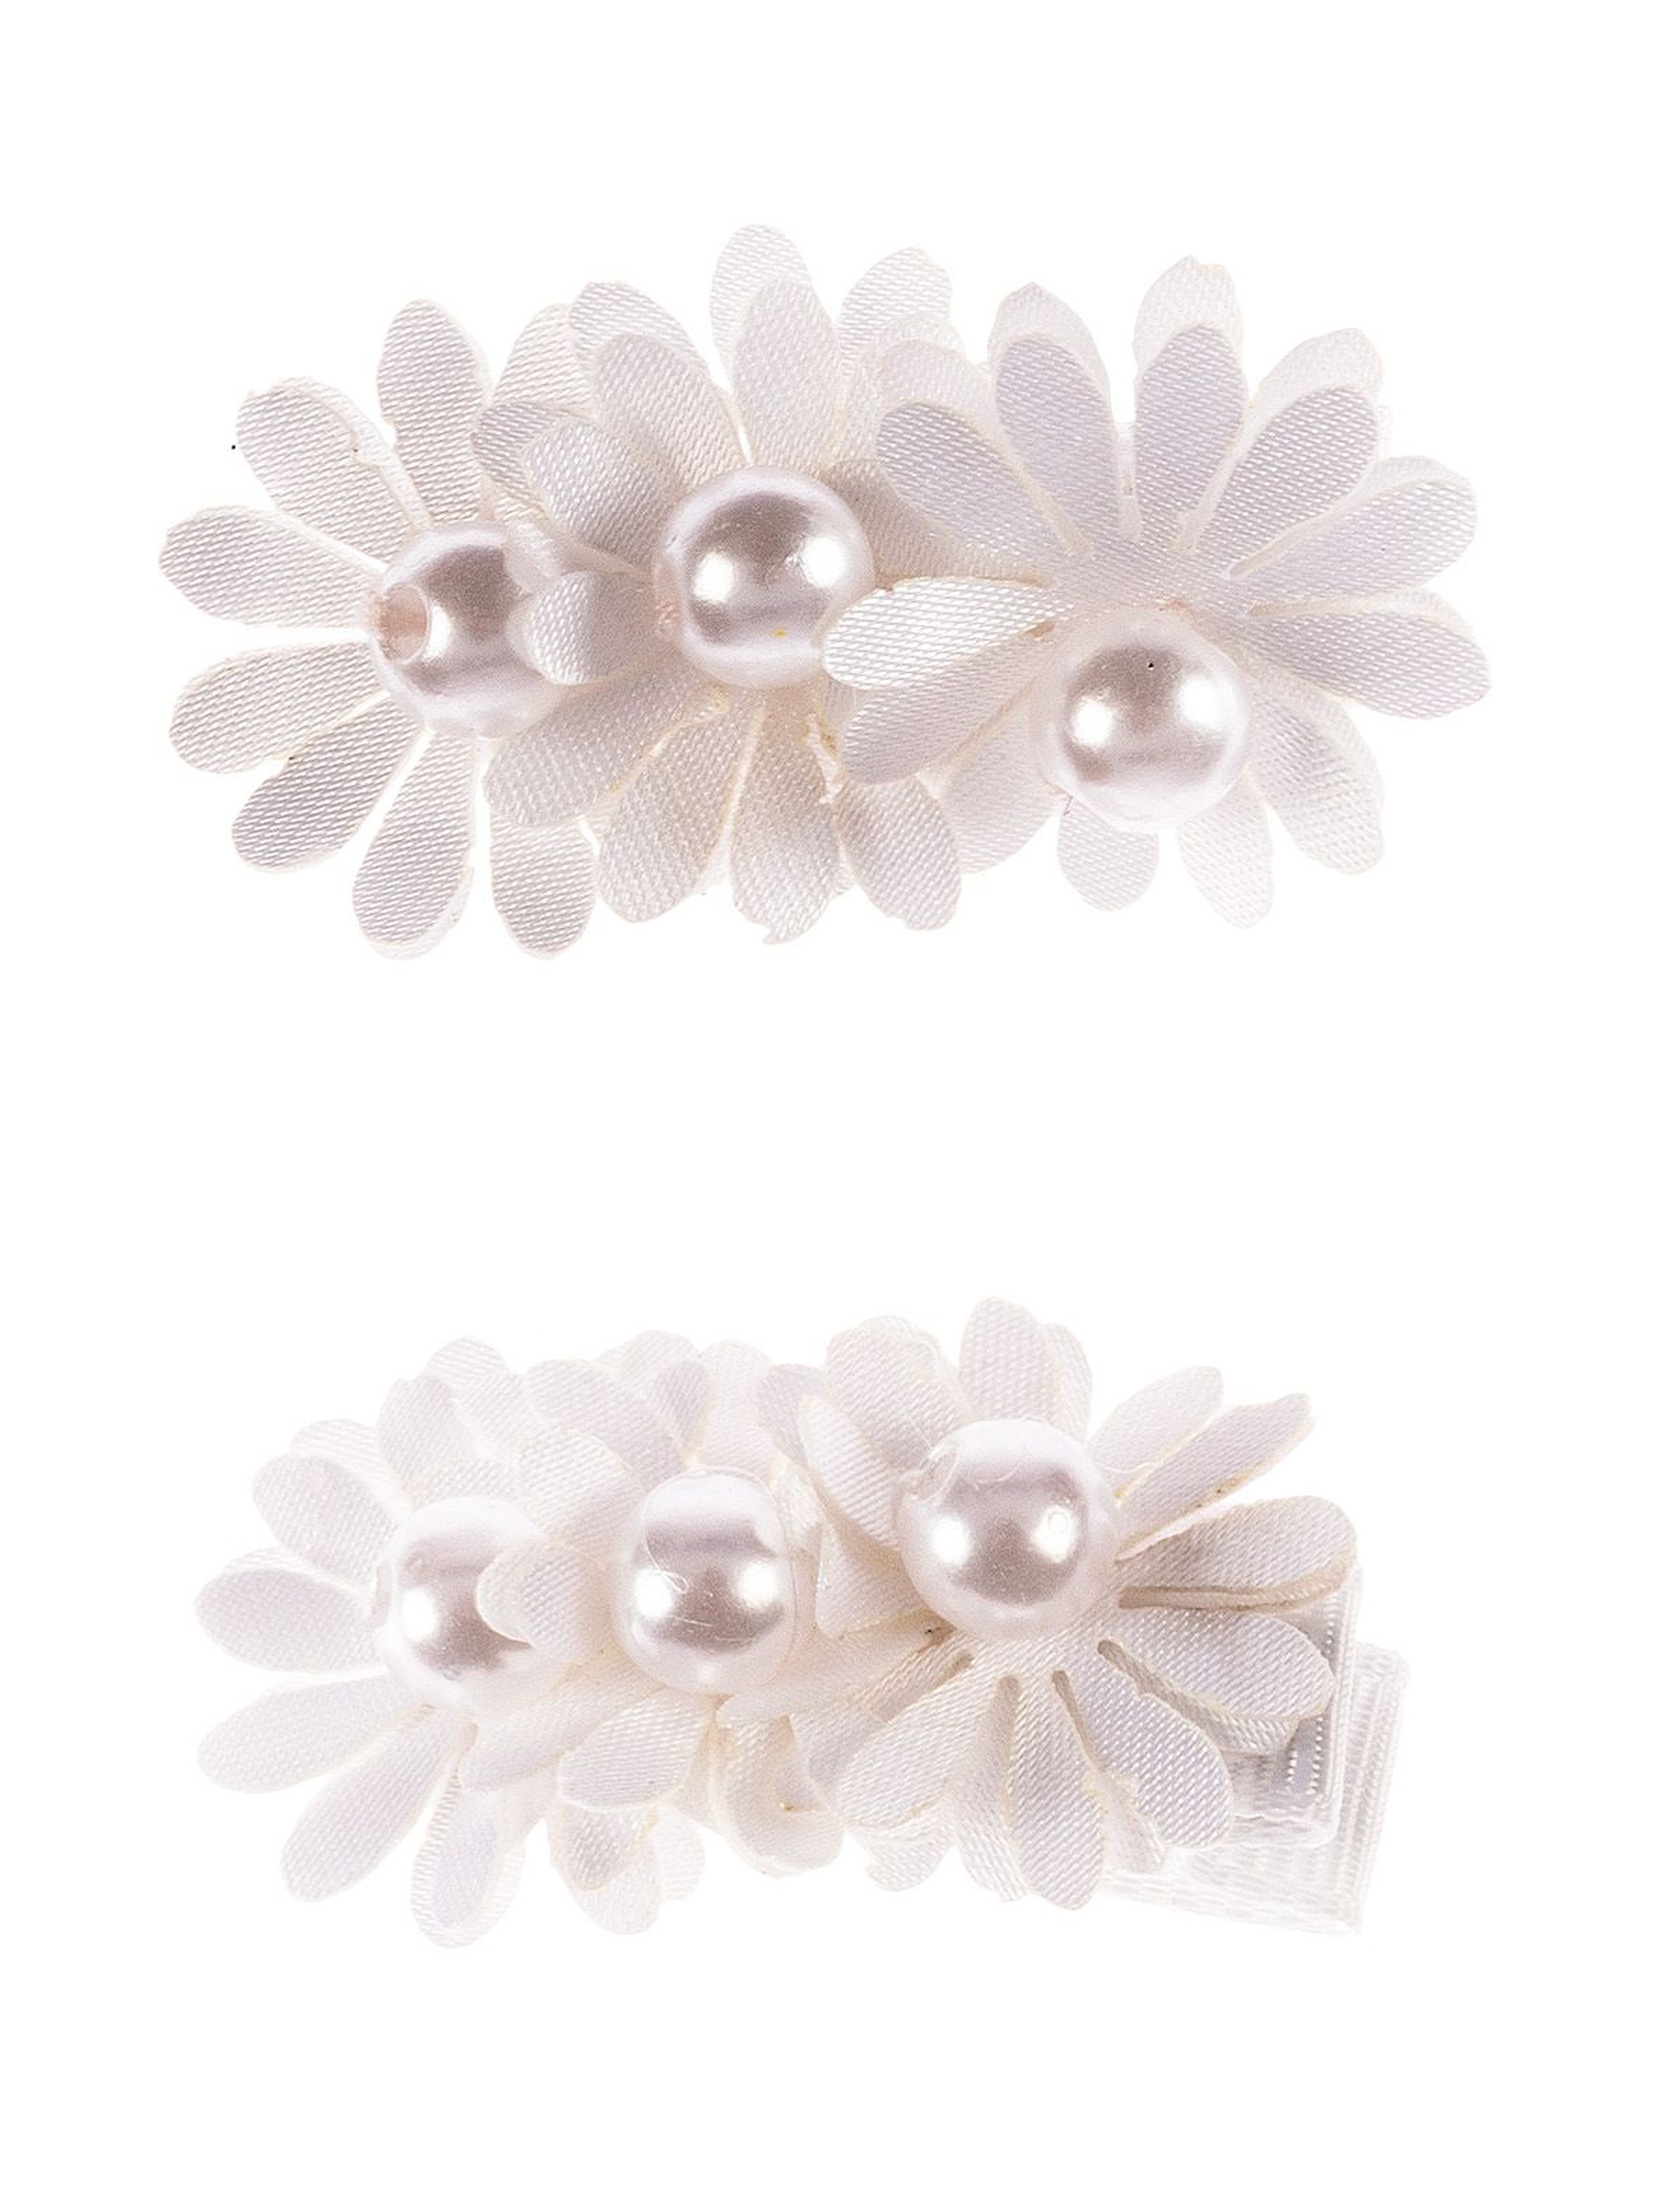 Spinki do włosów- białe kwiatki 2szt